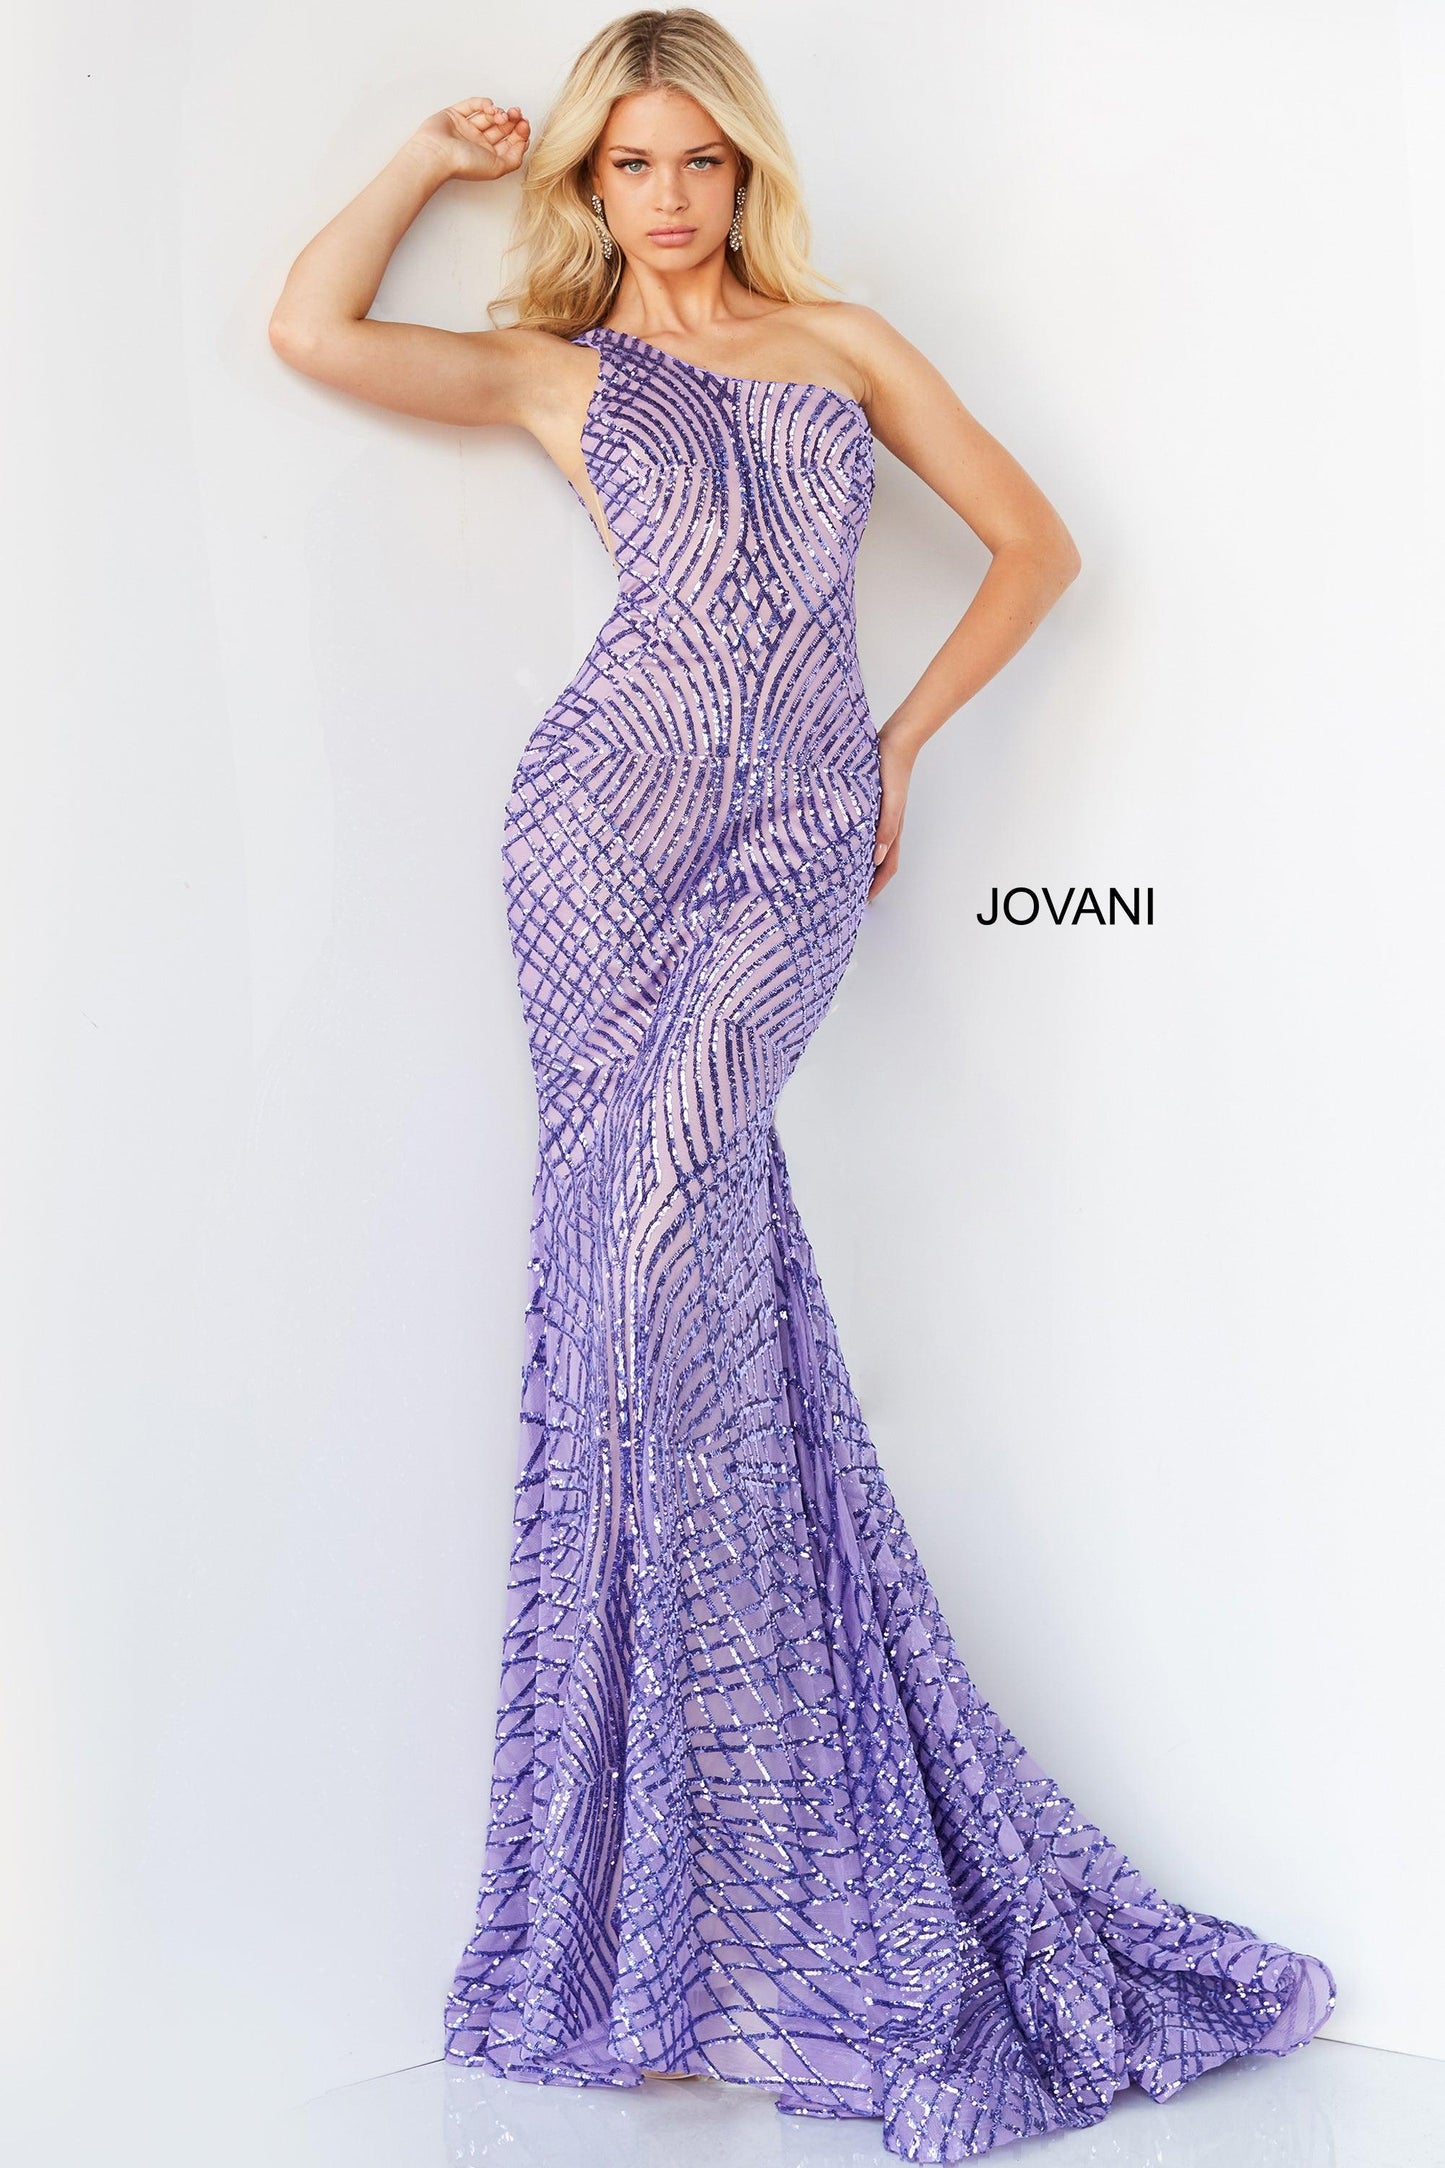 Jovani One Shoulder Long Prom Dress 06517 - The Dress Outlet